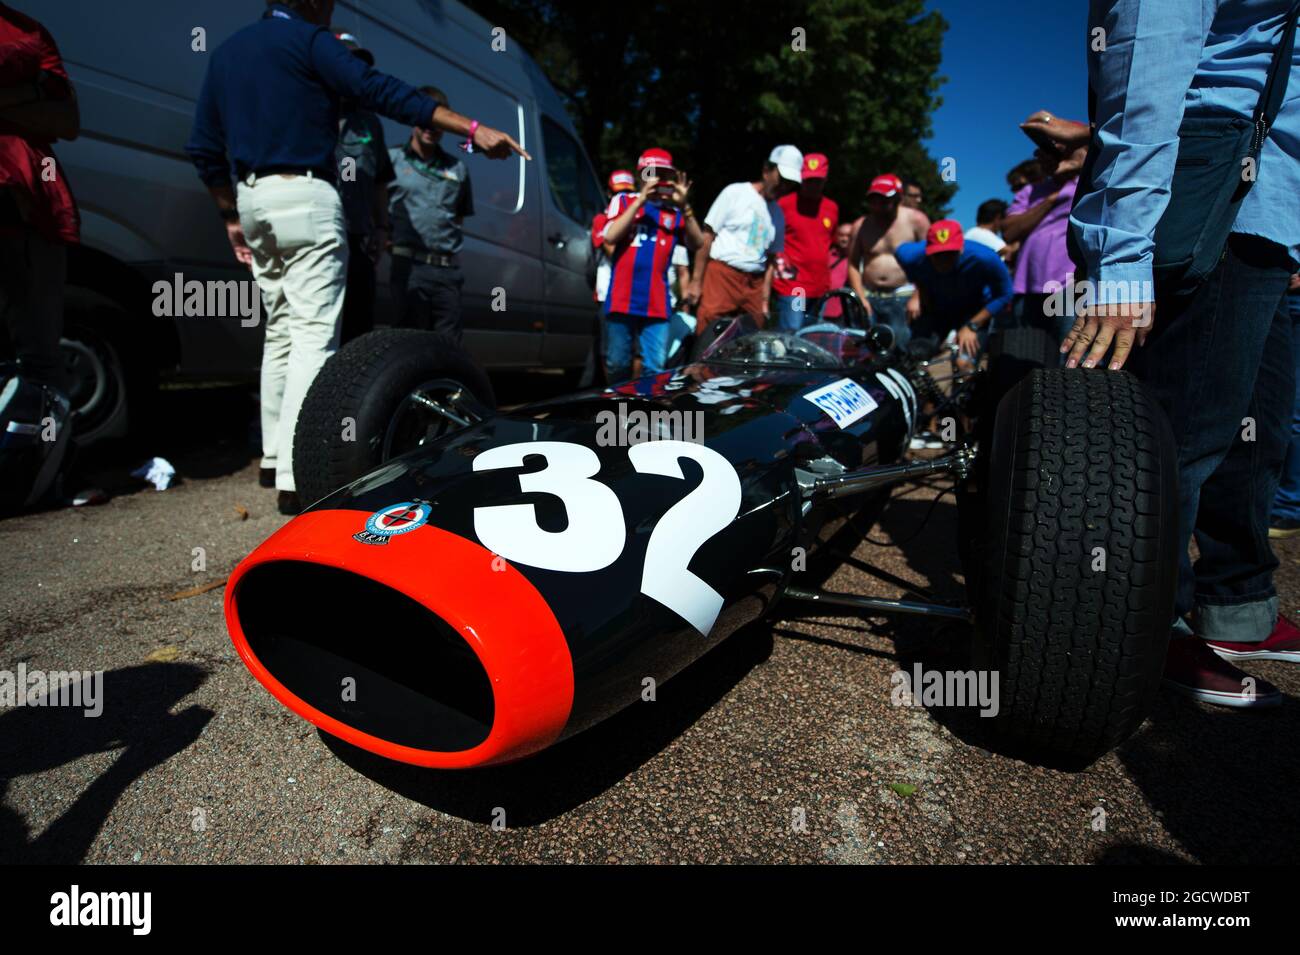 Der BRM P261, den Jackie Stewart (GBR) zum ersten Grand Prix-Sieg beim GP von Italien 1965 fuhr. Großer Preis von Italien, Samstag, 5. September 2015. Monza Italien. Stockfoto